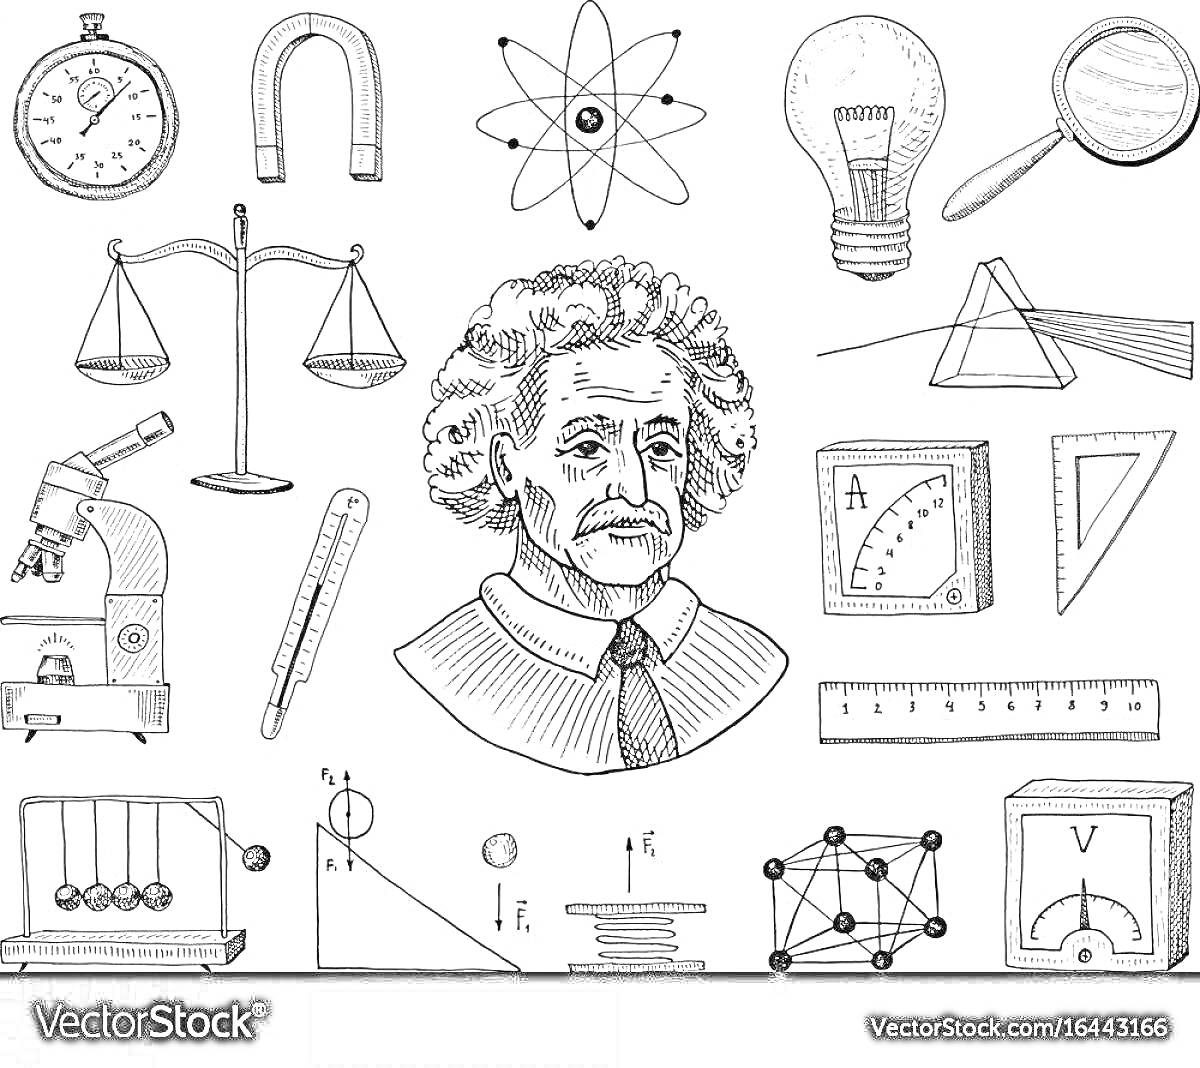 Раскраска Разнообразные элементы физики: секундомер, подкова-магнит, атом, лампочка, увеличительное стекло, весы, микроскоп, термометр, портрет учёного, амперметр, треугольник, линейка, маятник Ньютона, формулы, схематичное изображение прямоугольного параллелепипед